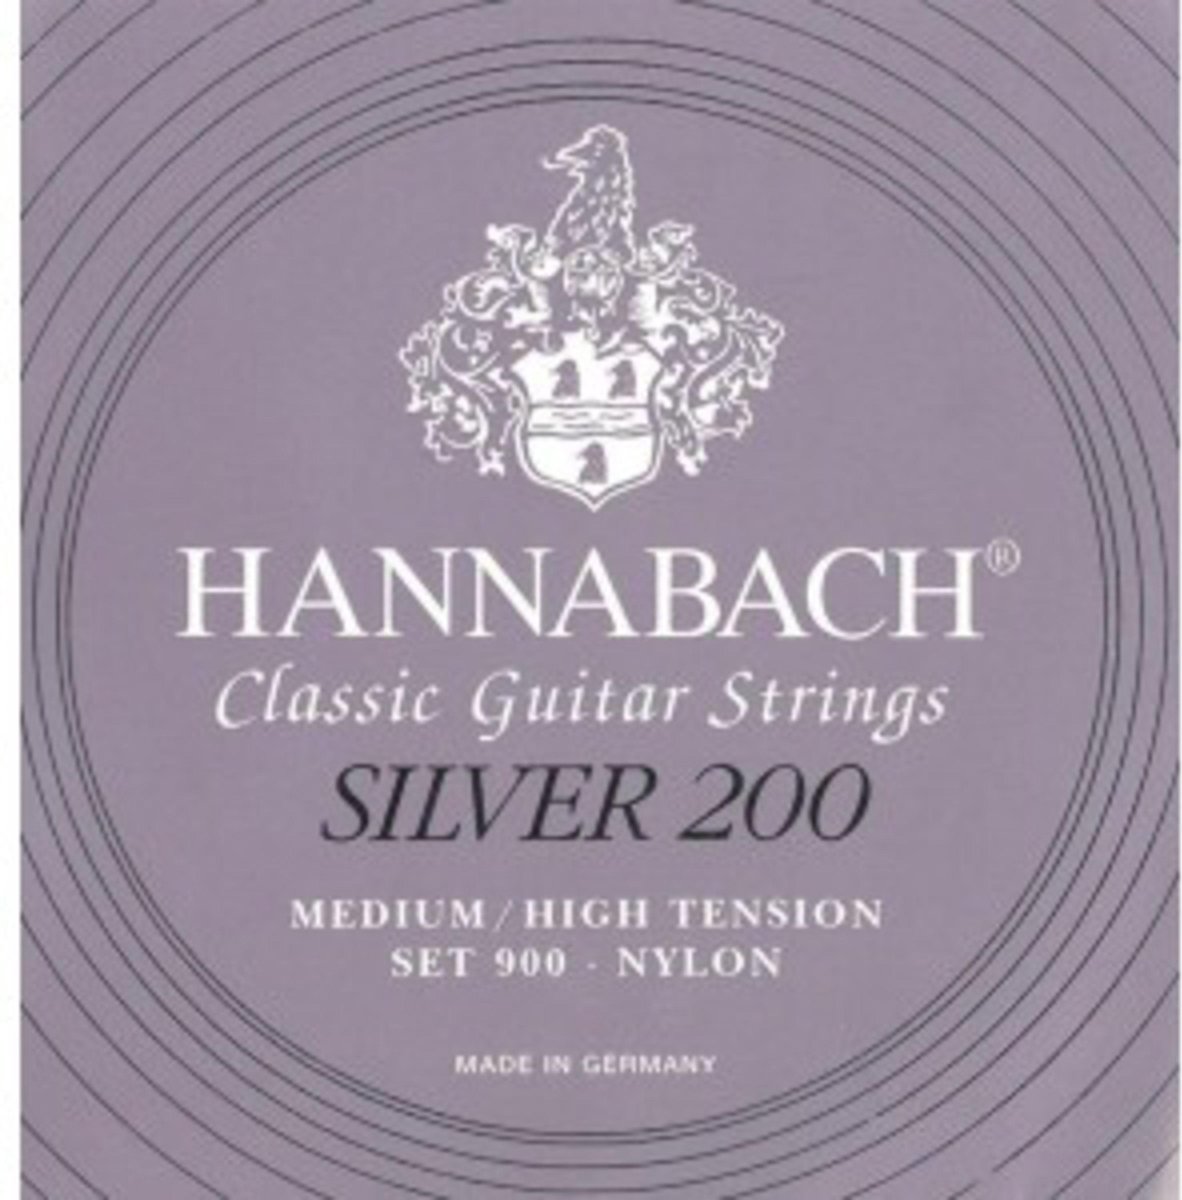 Hannabach K-Git.snaren set 900 MHT Nylon zilver 200 - Klassieke gitaarsnaren